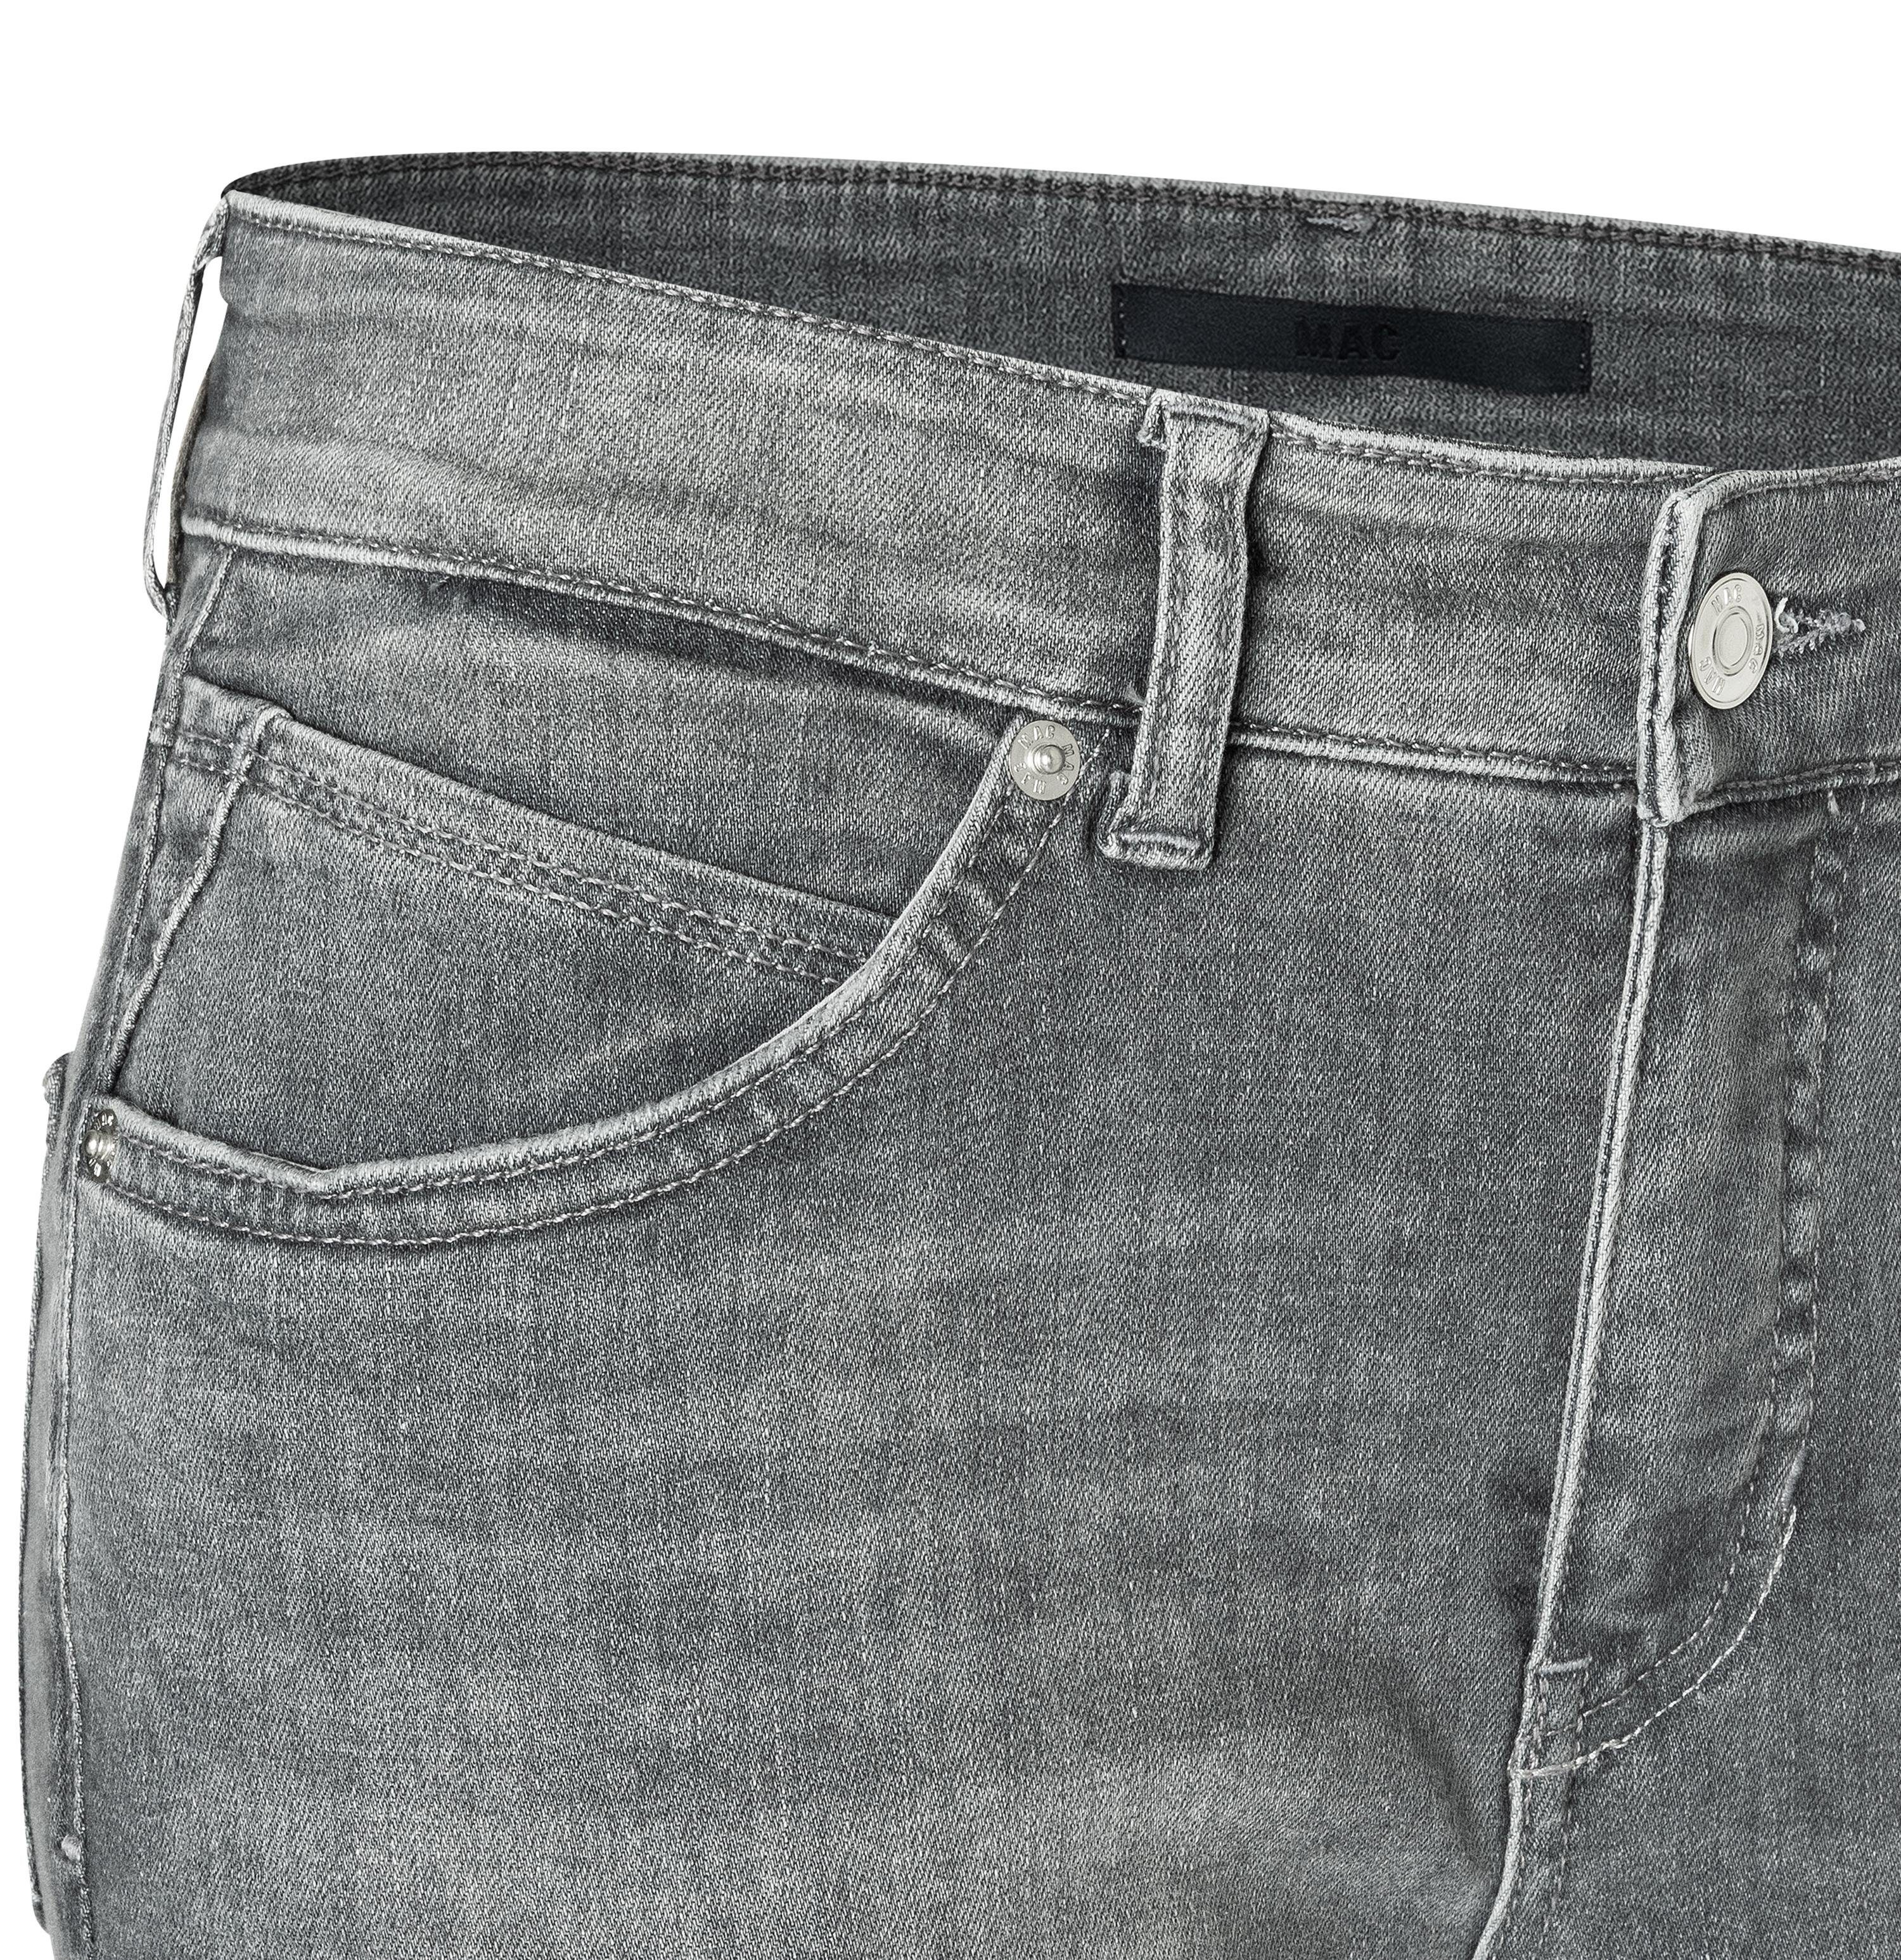 MAC Stretch-Jeans wash D339 MELANIE grey MAC summer 5040-87-0389